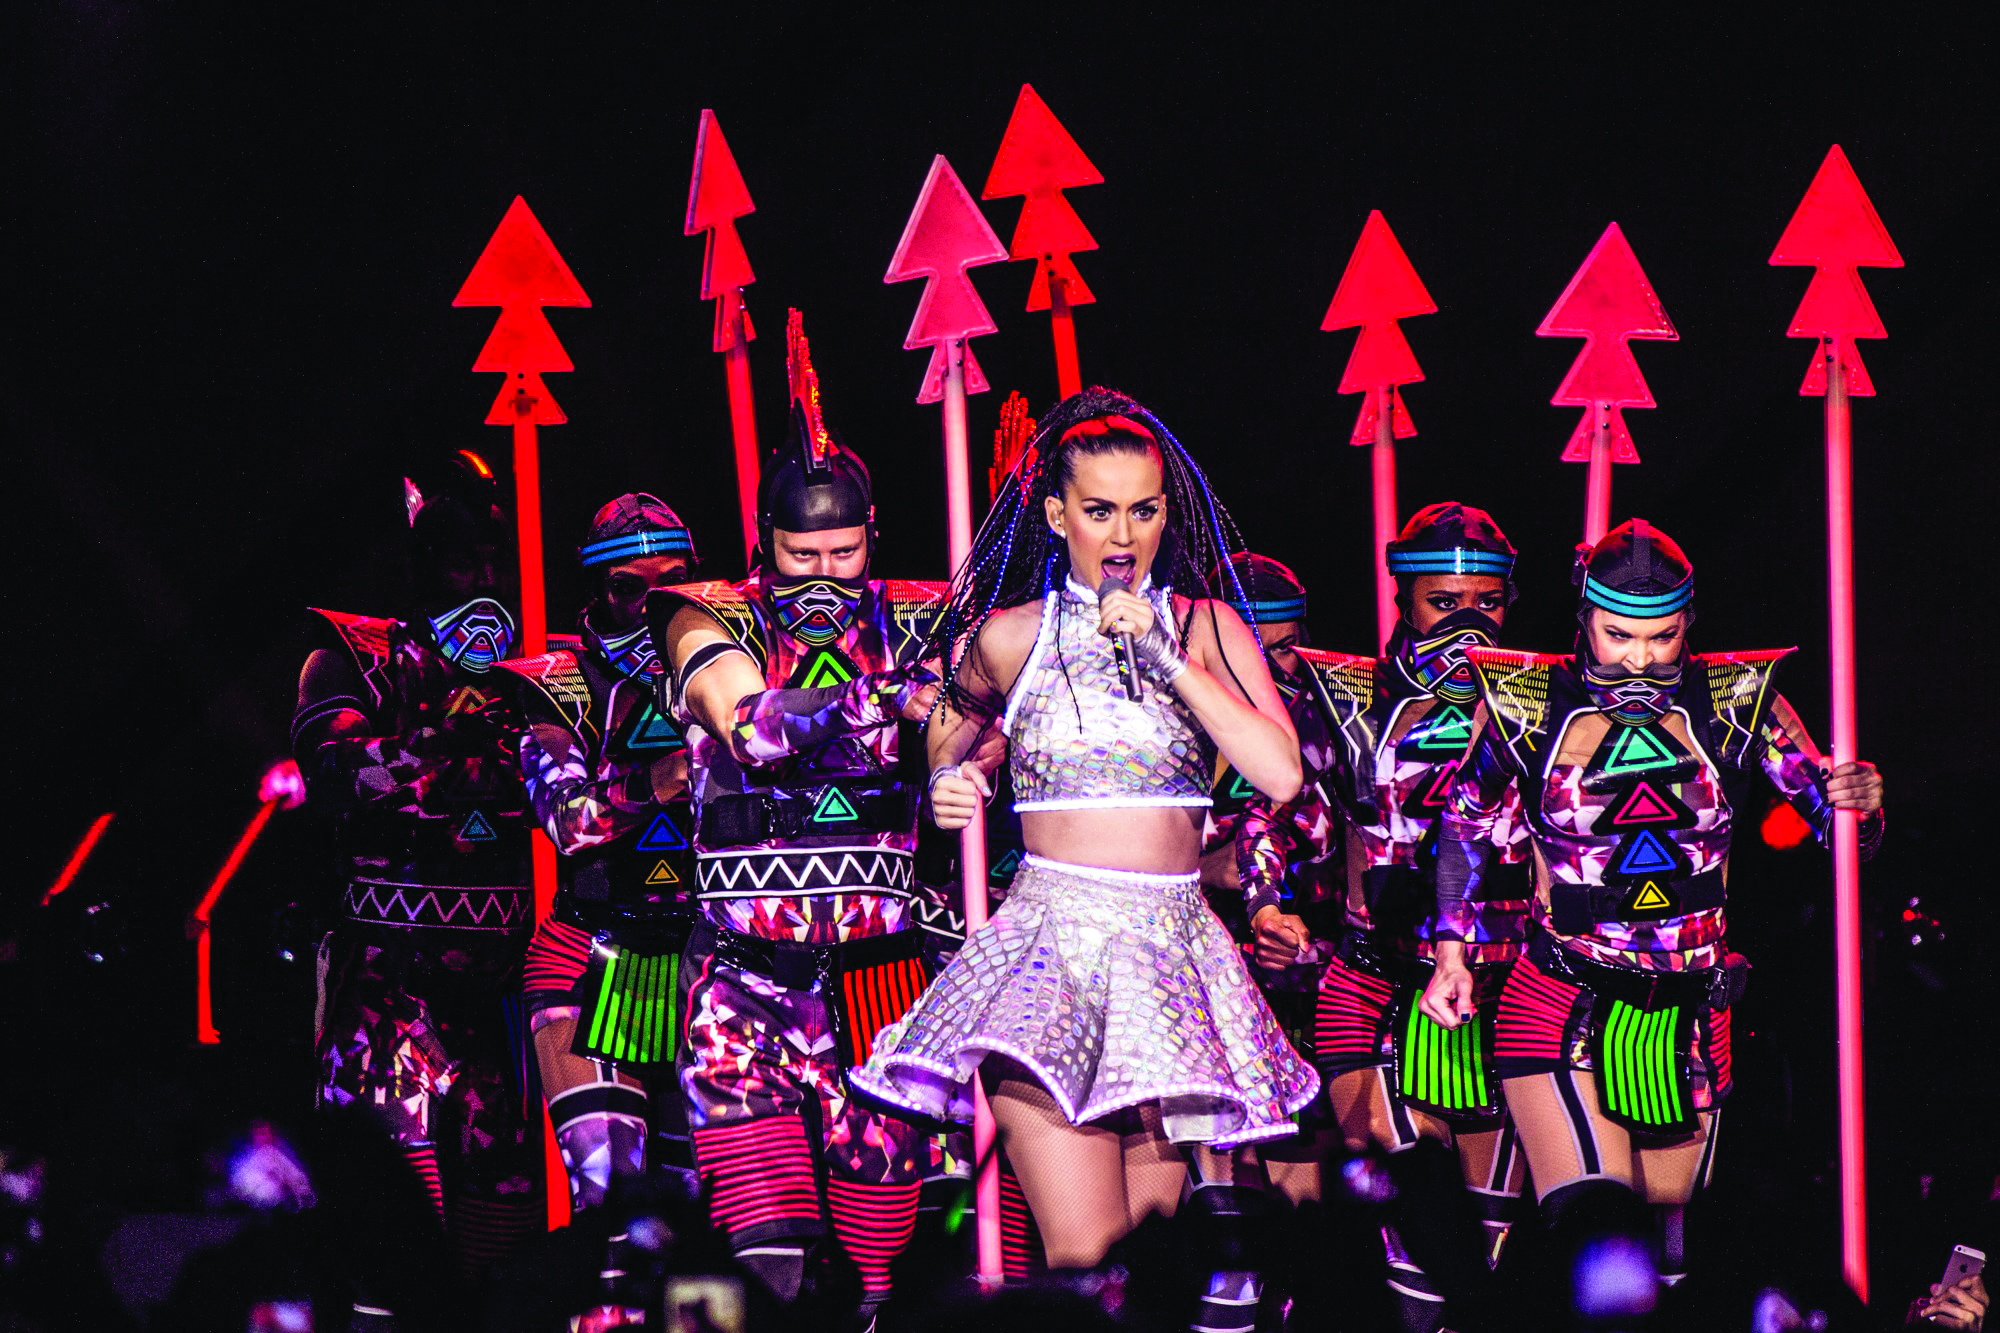 Katy Perry’s Prismatic Tour